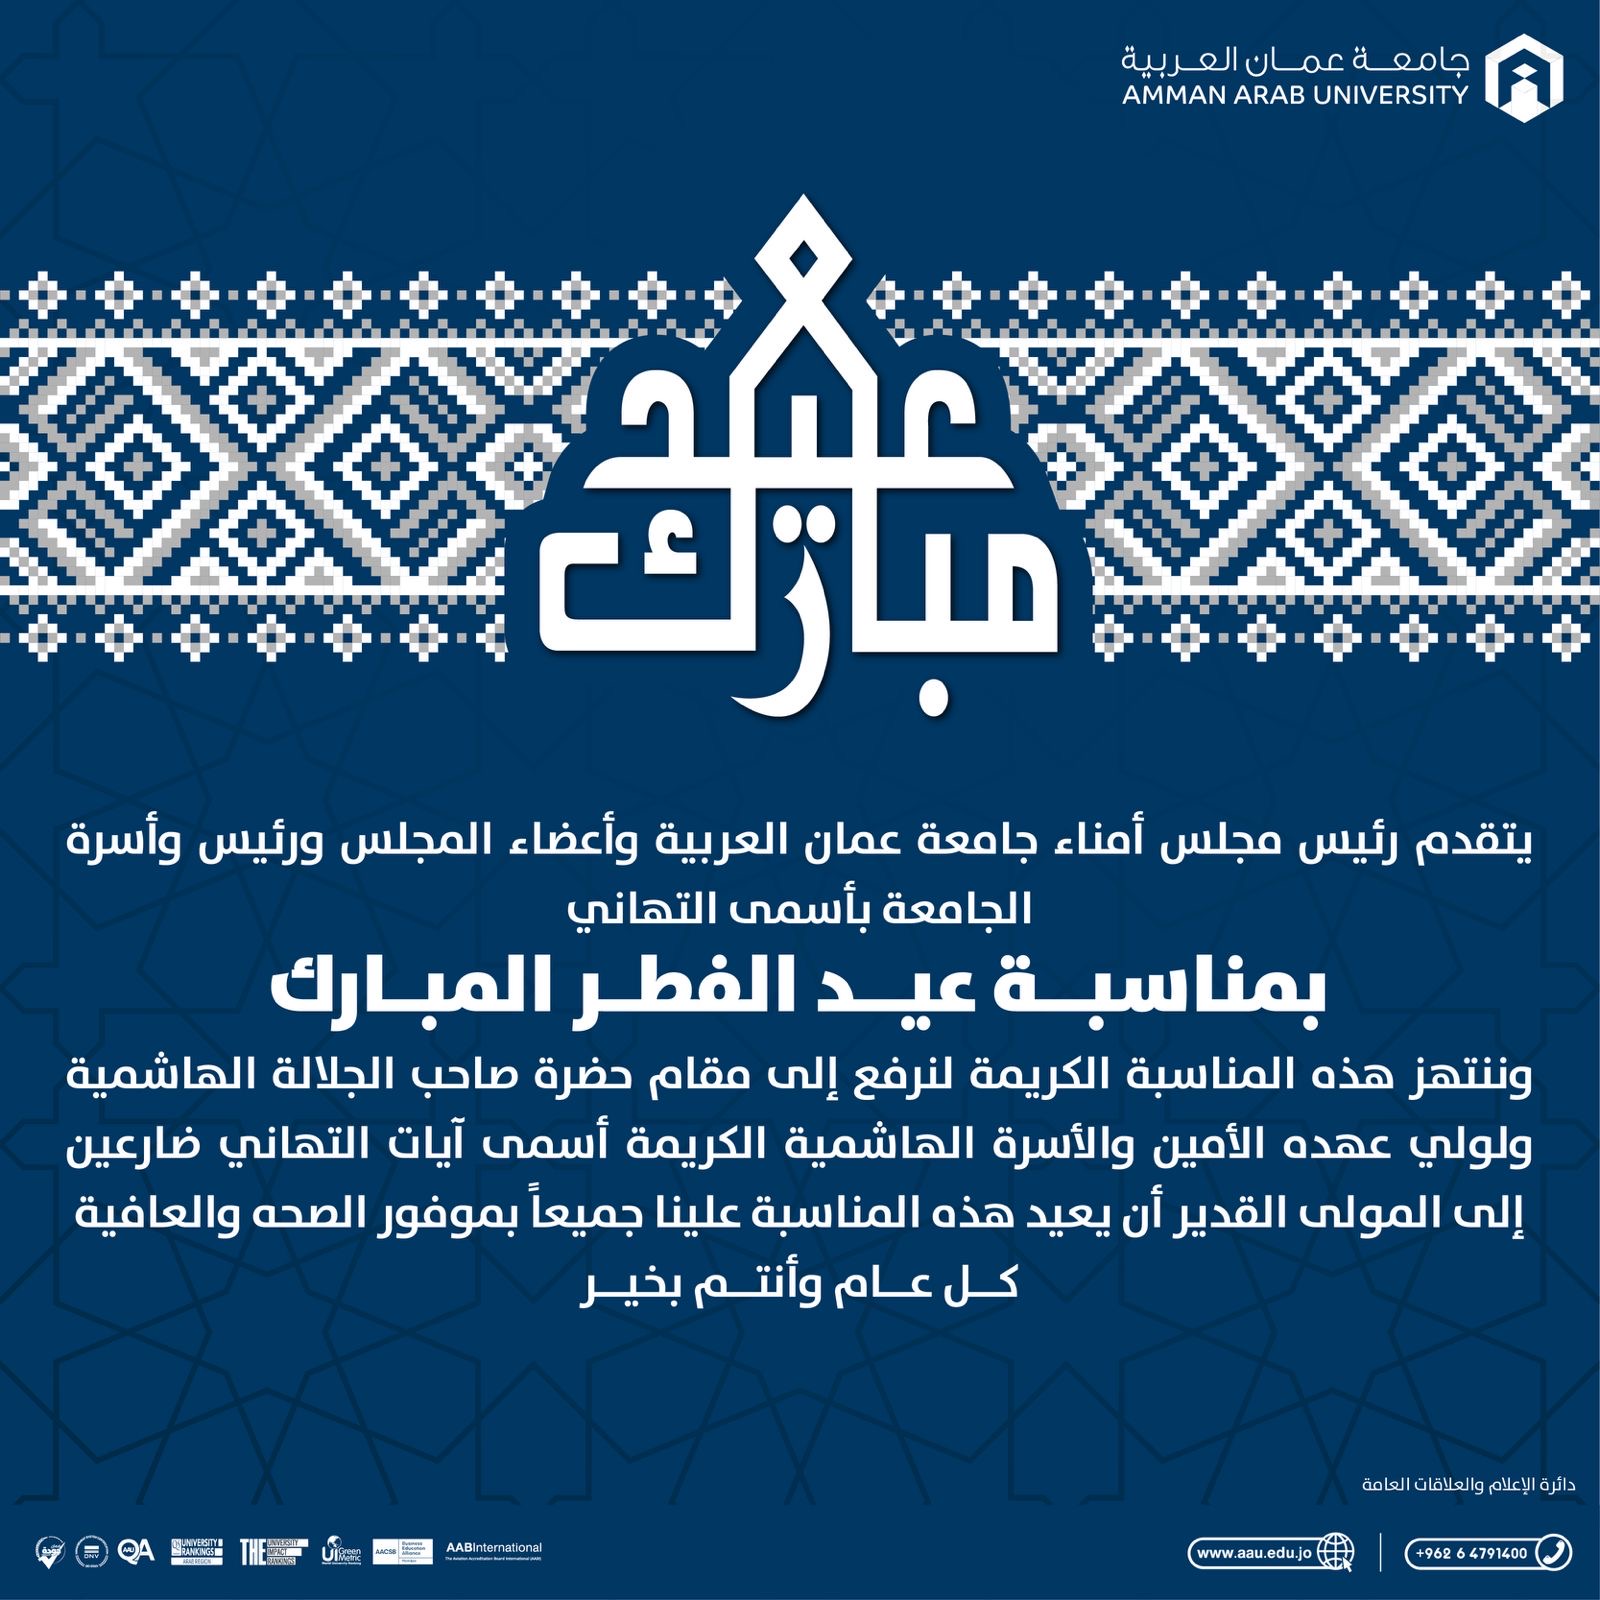 جامعة عمان العربية تهنئ بحلول عيد الفطر السعيد 